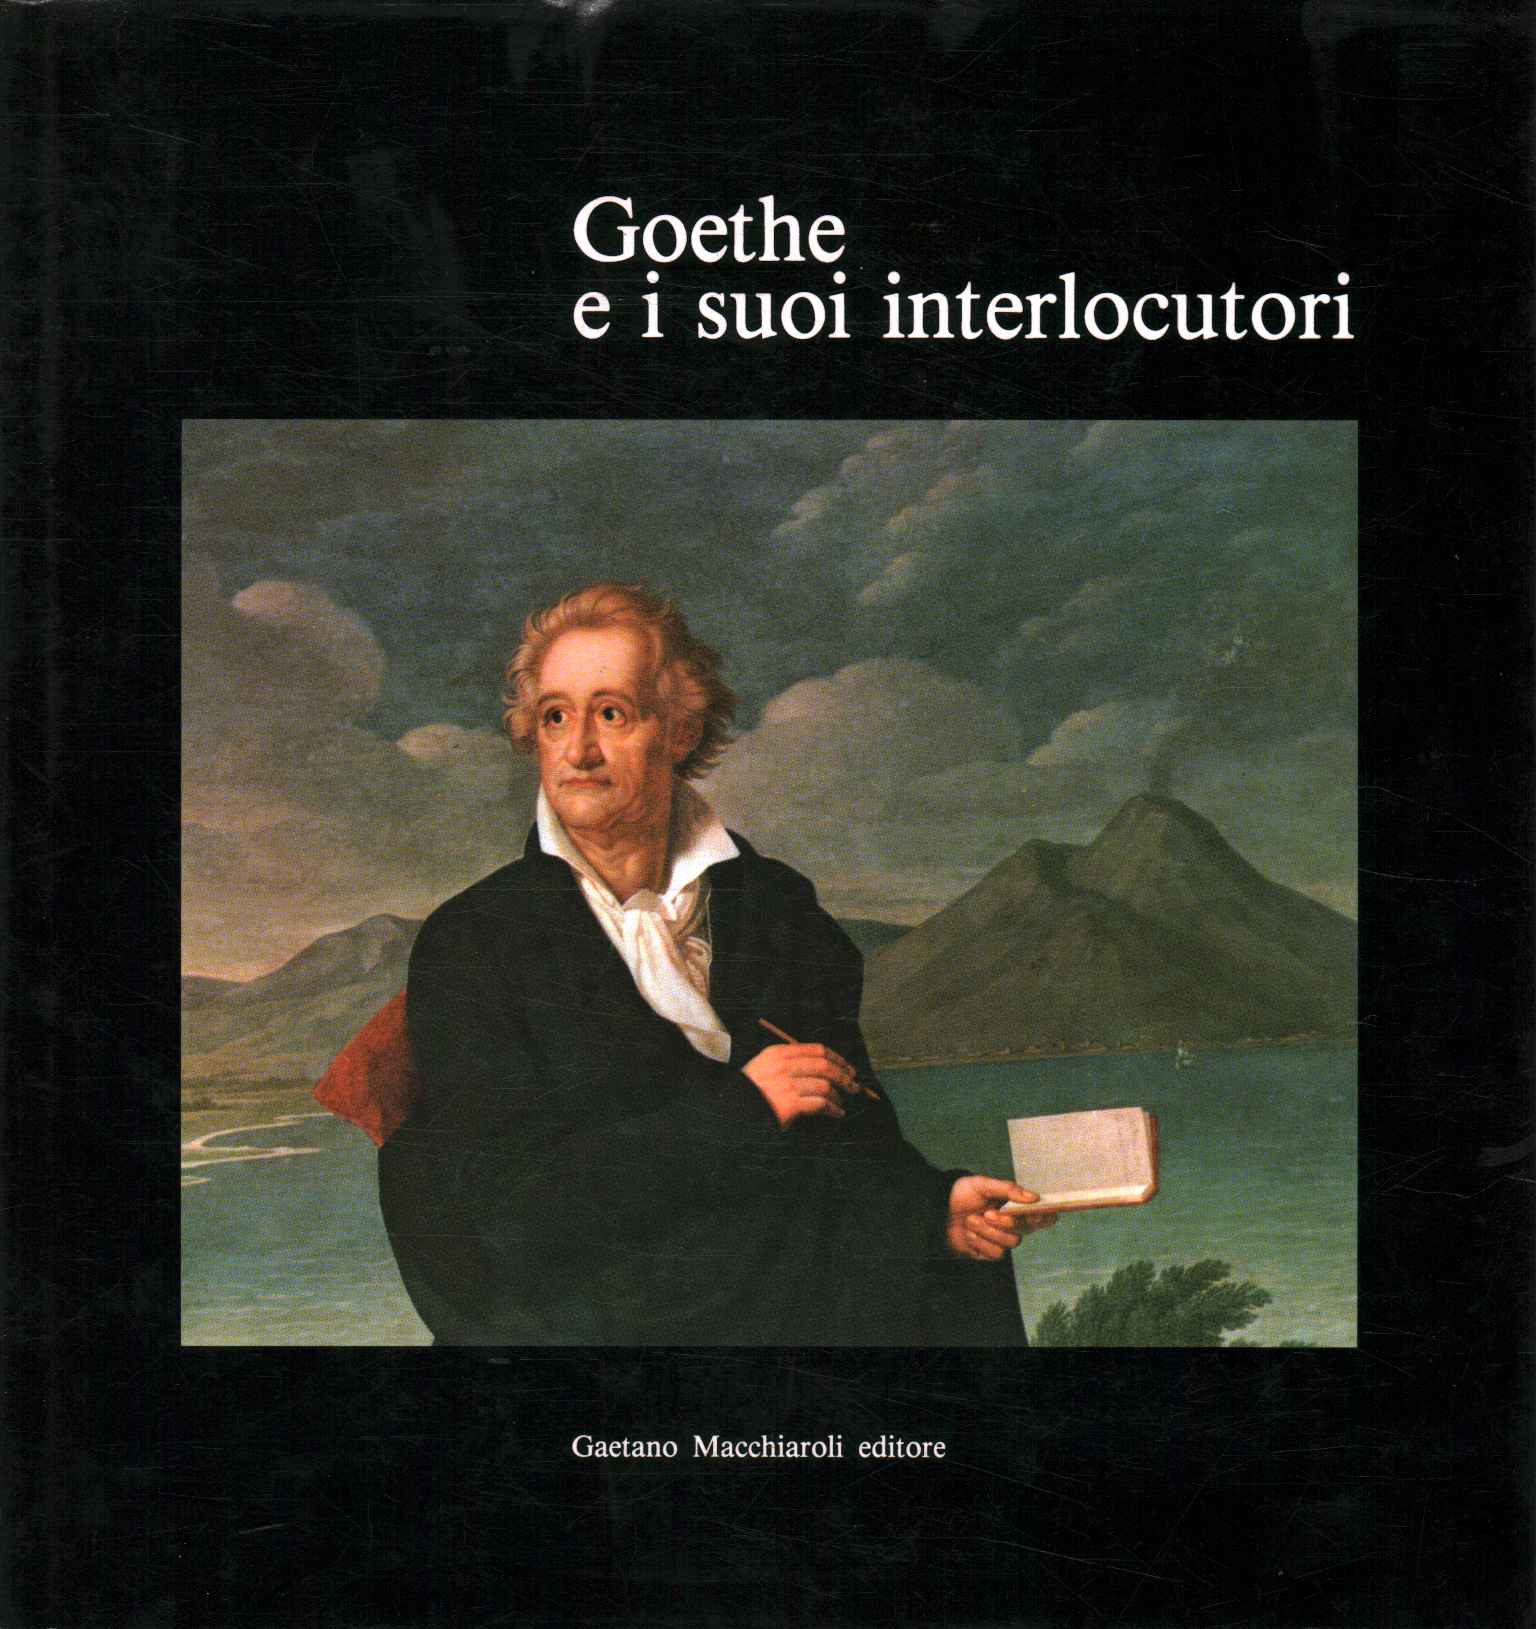 Goethe und seine Gesprächspartner